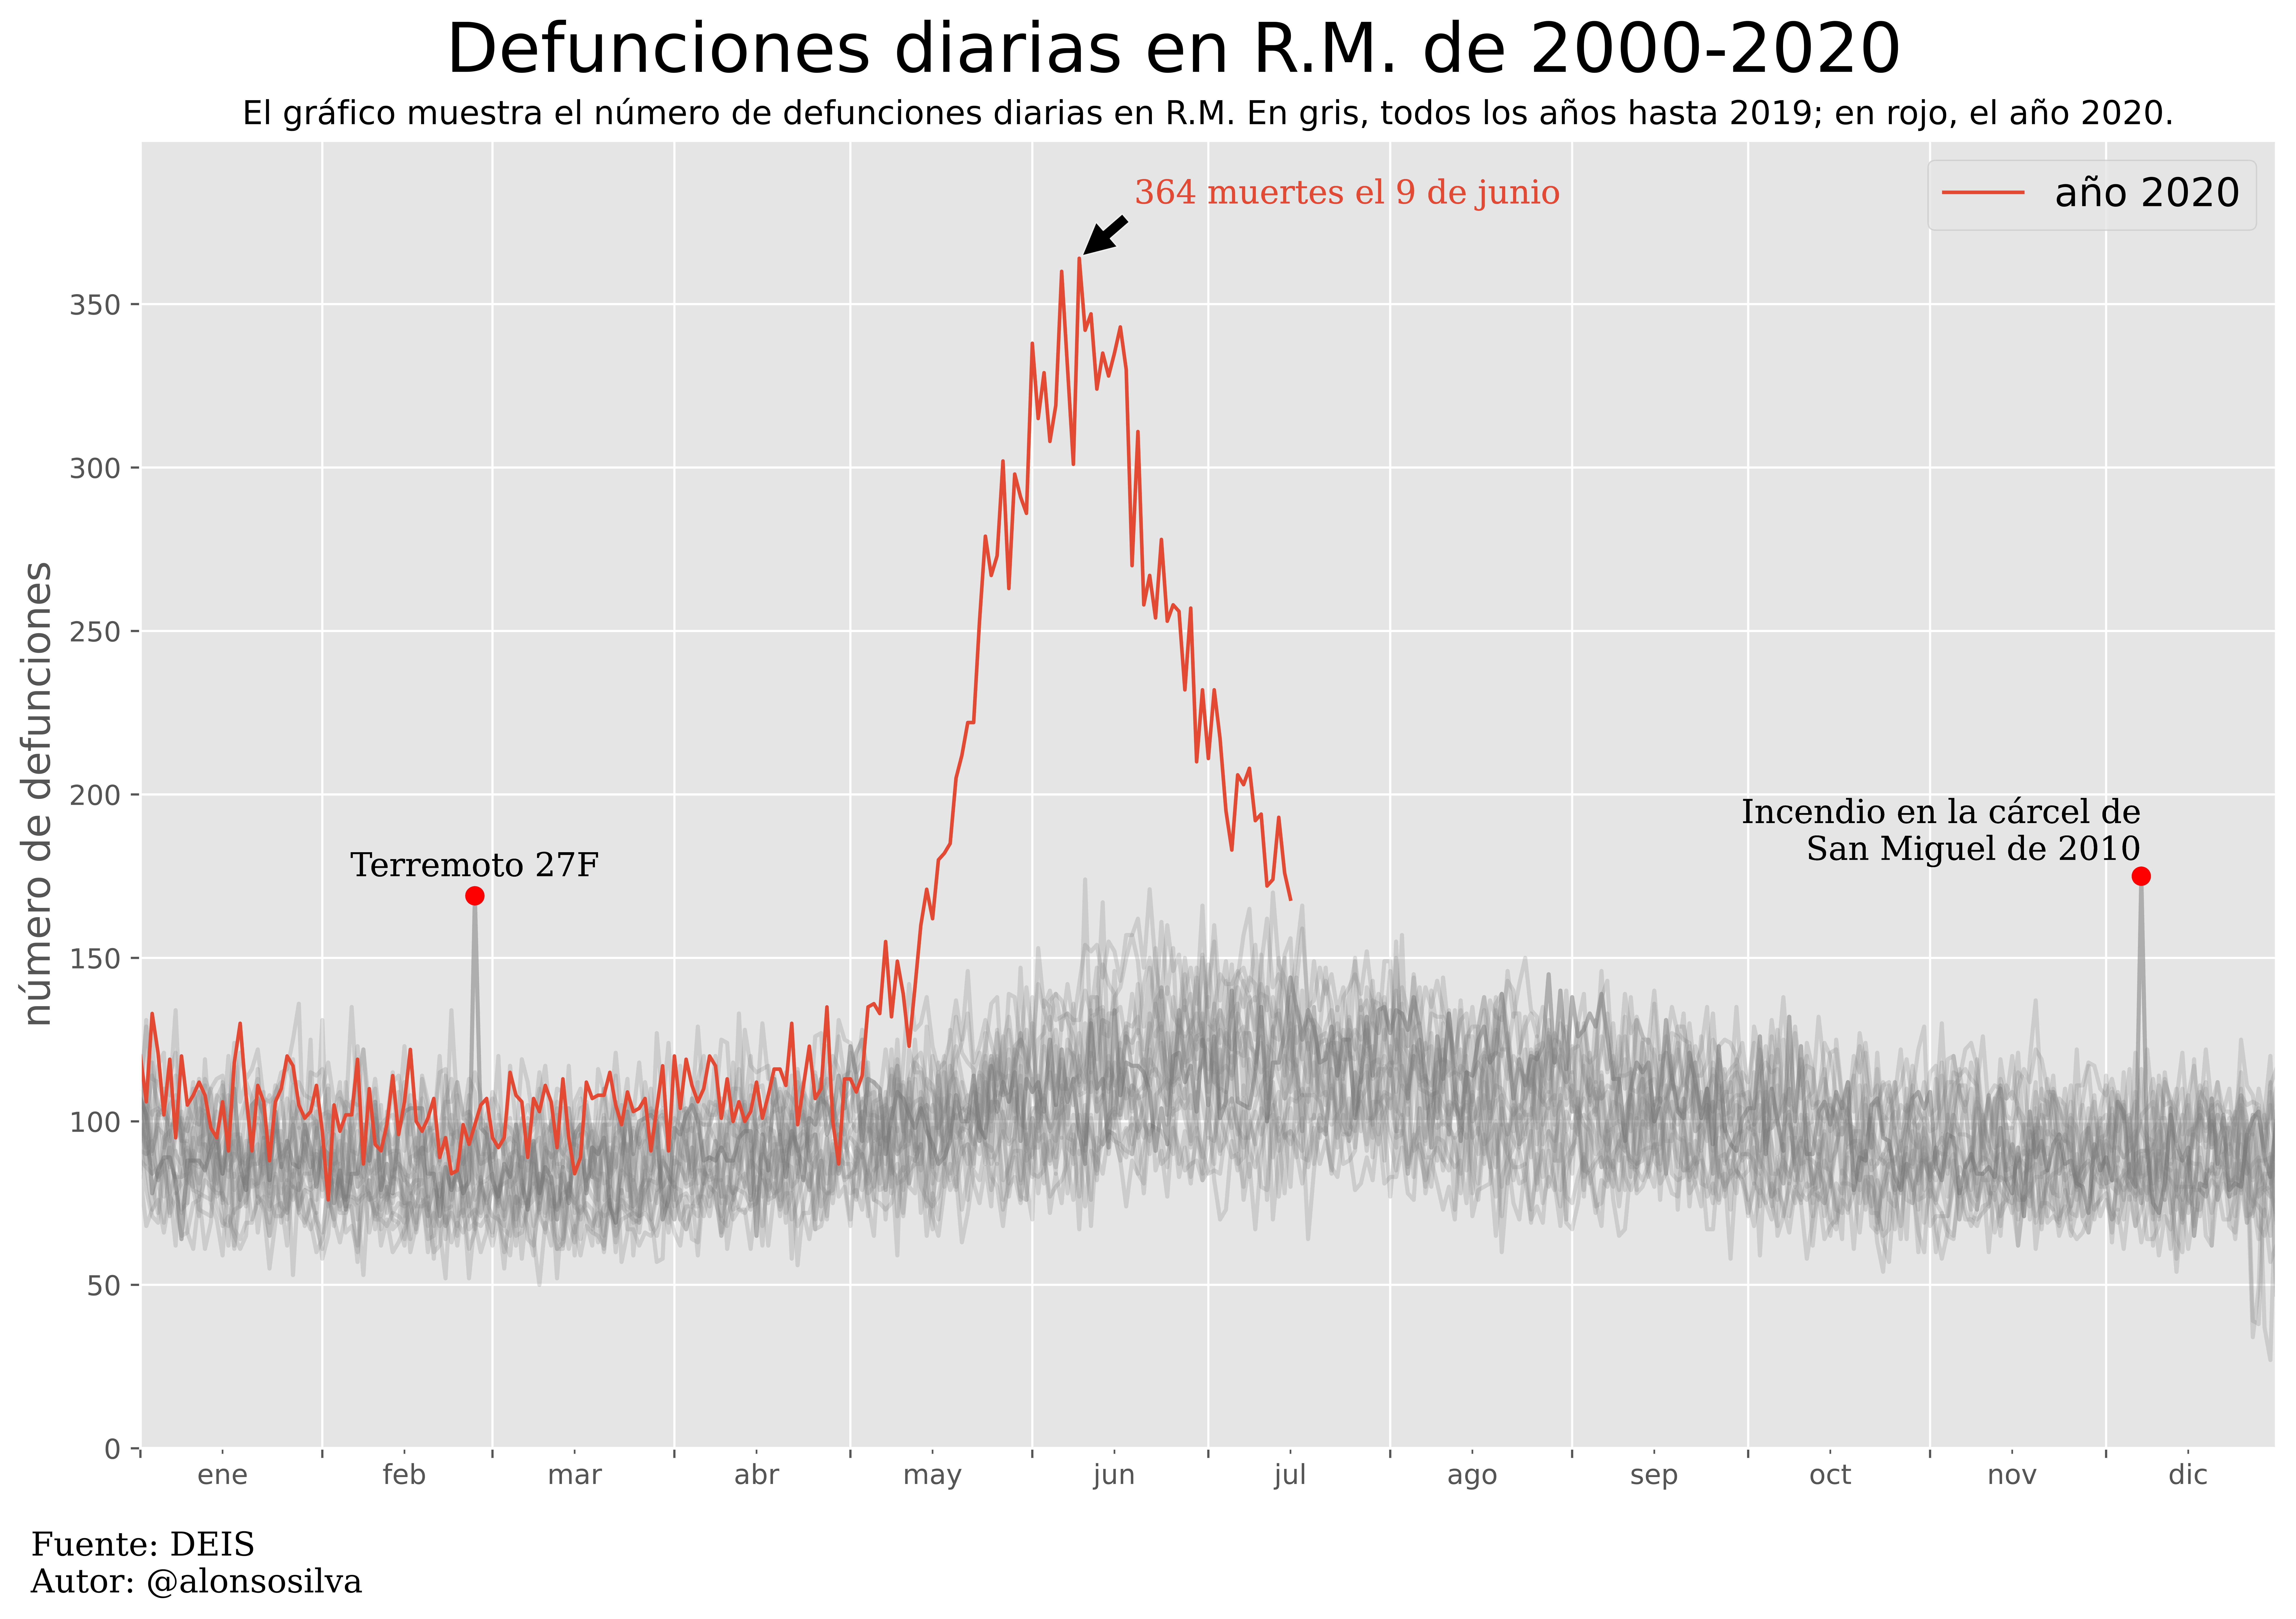 Defunciones diarias en la Región Metropolitana. Fuente: Alonso Silva, con datos de DEIS.